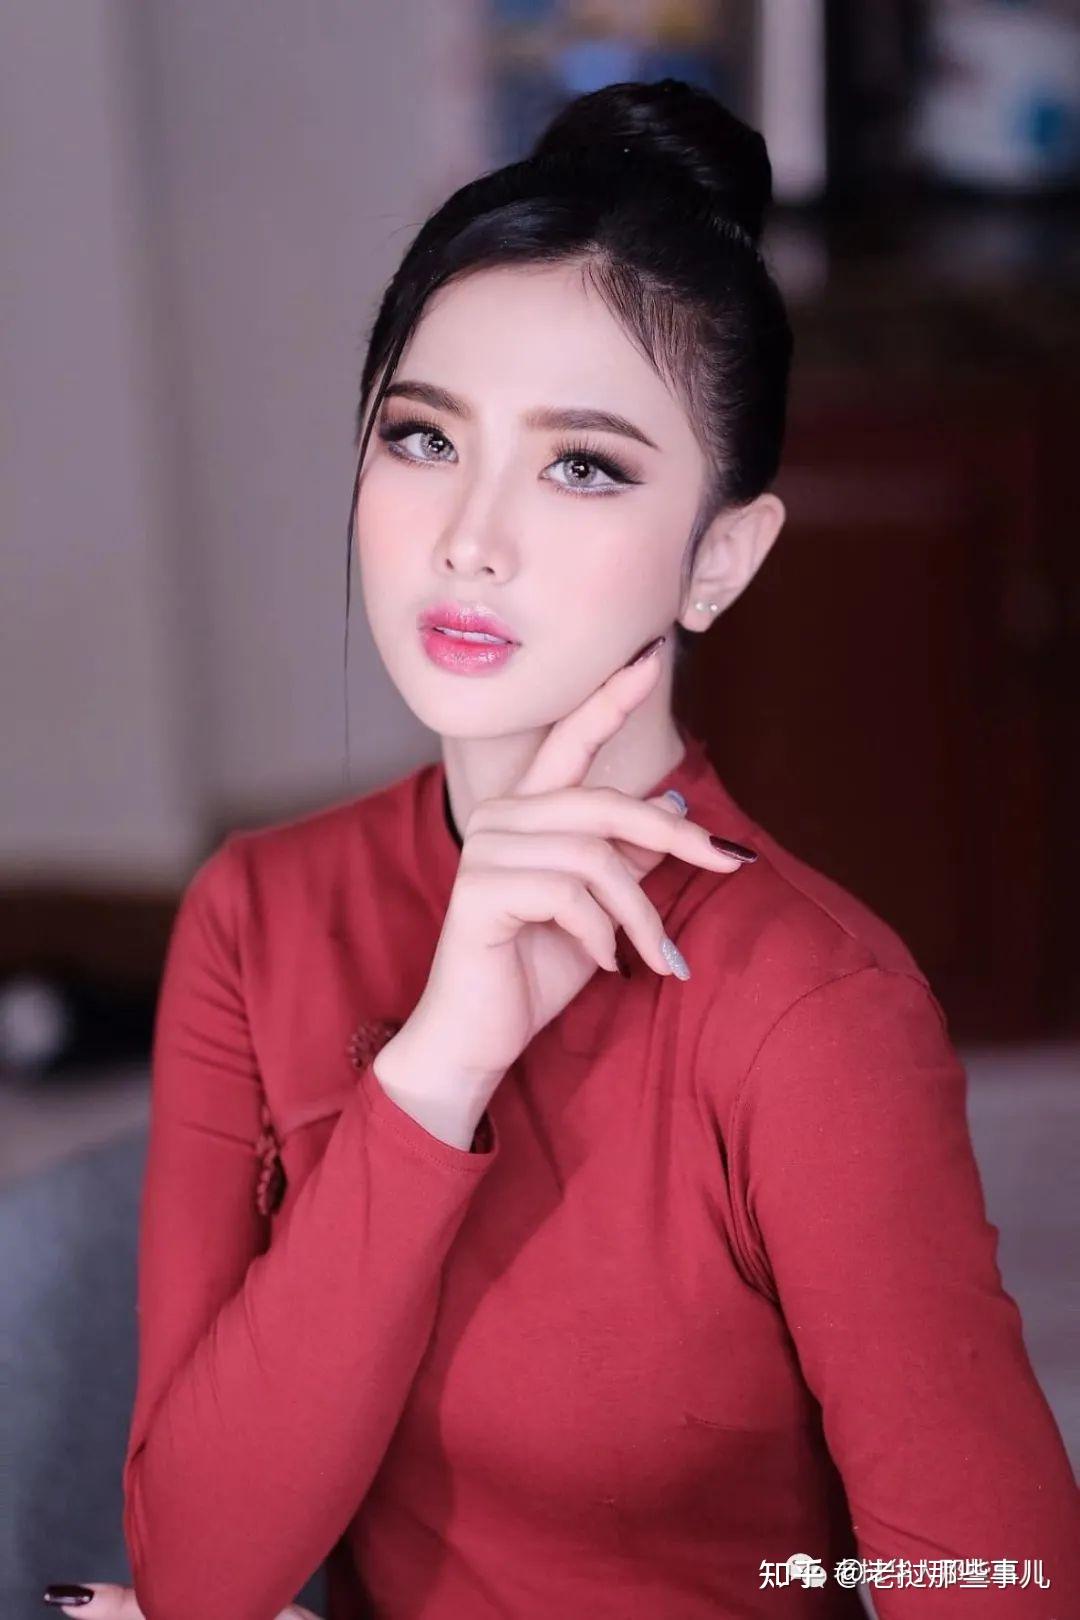 人间尤物——可爱又性感的老挝美女水英